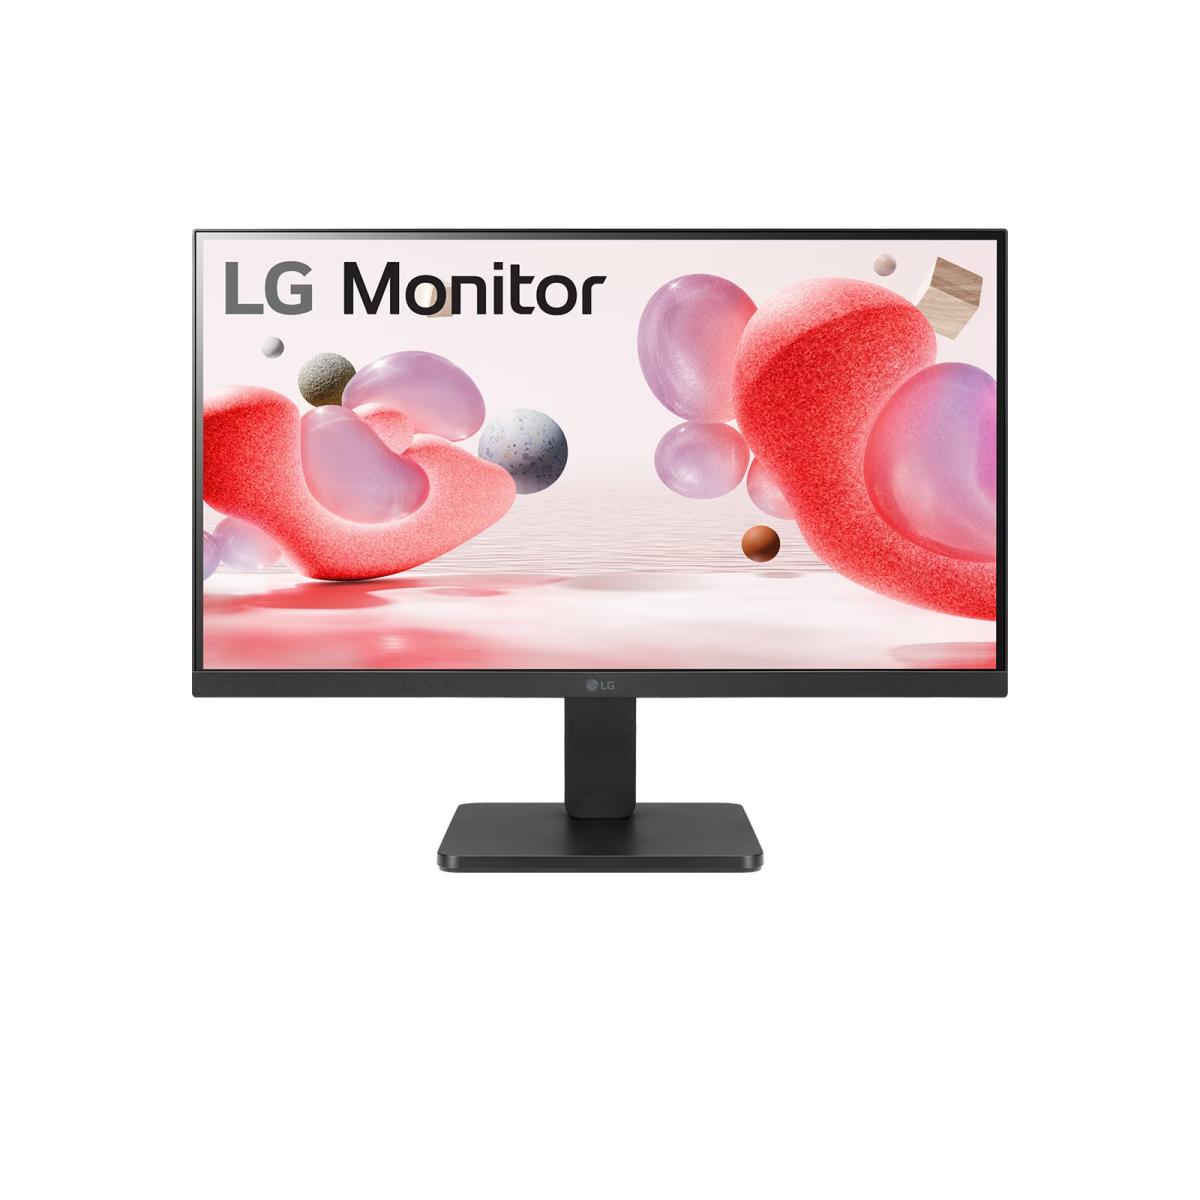 LG 22MR410-B 21.5” FHD Monitor with AMD FreeSync, 100Hz Refresh Rate, On Screen Control, Black Stabiliser